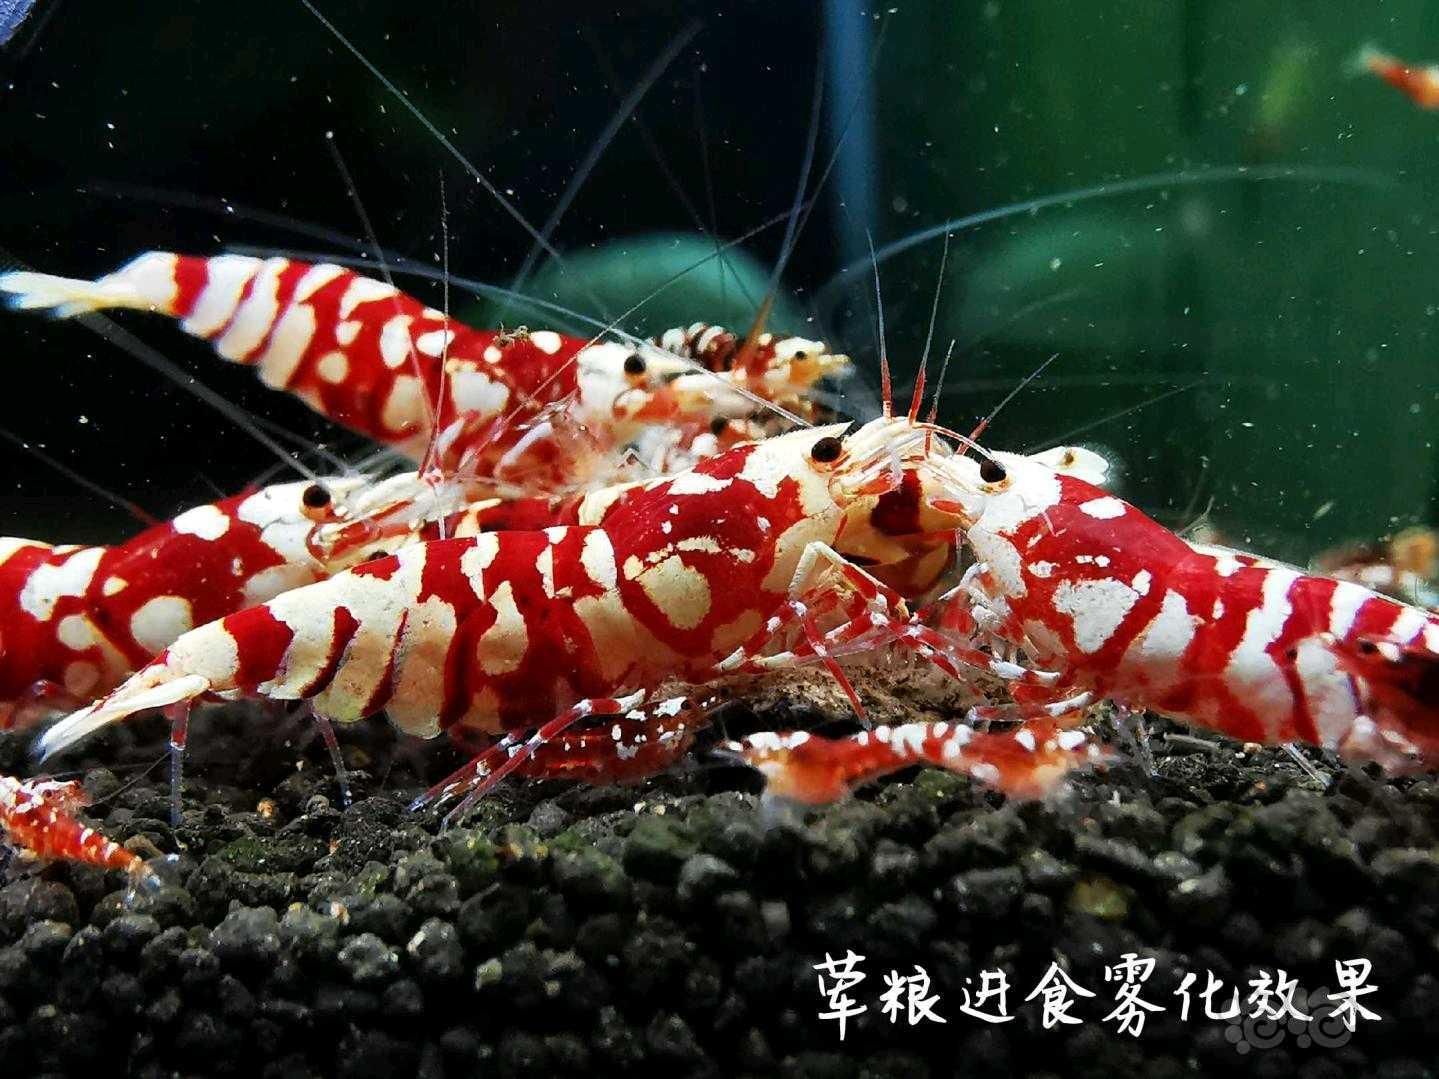 【用品】2021-04-21#RMB拍卖水晶虾饲料一份-图7